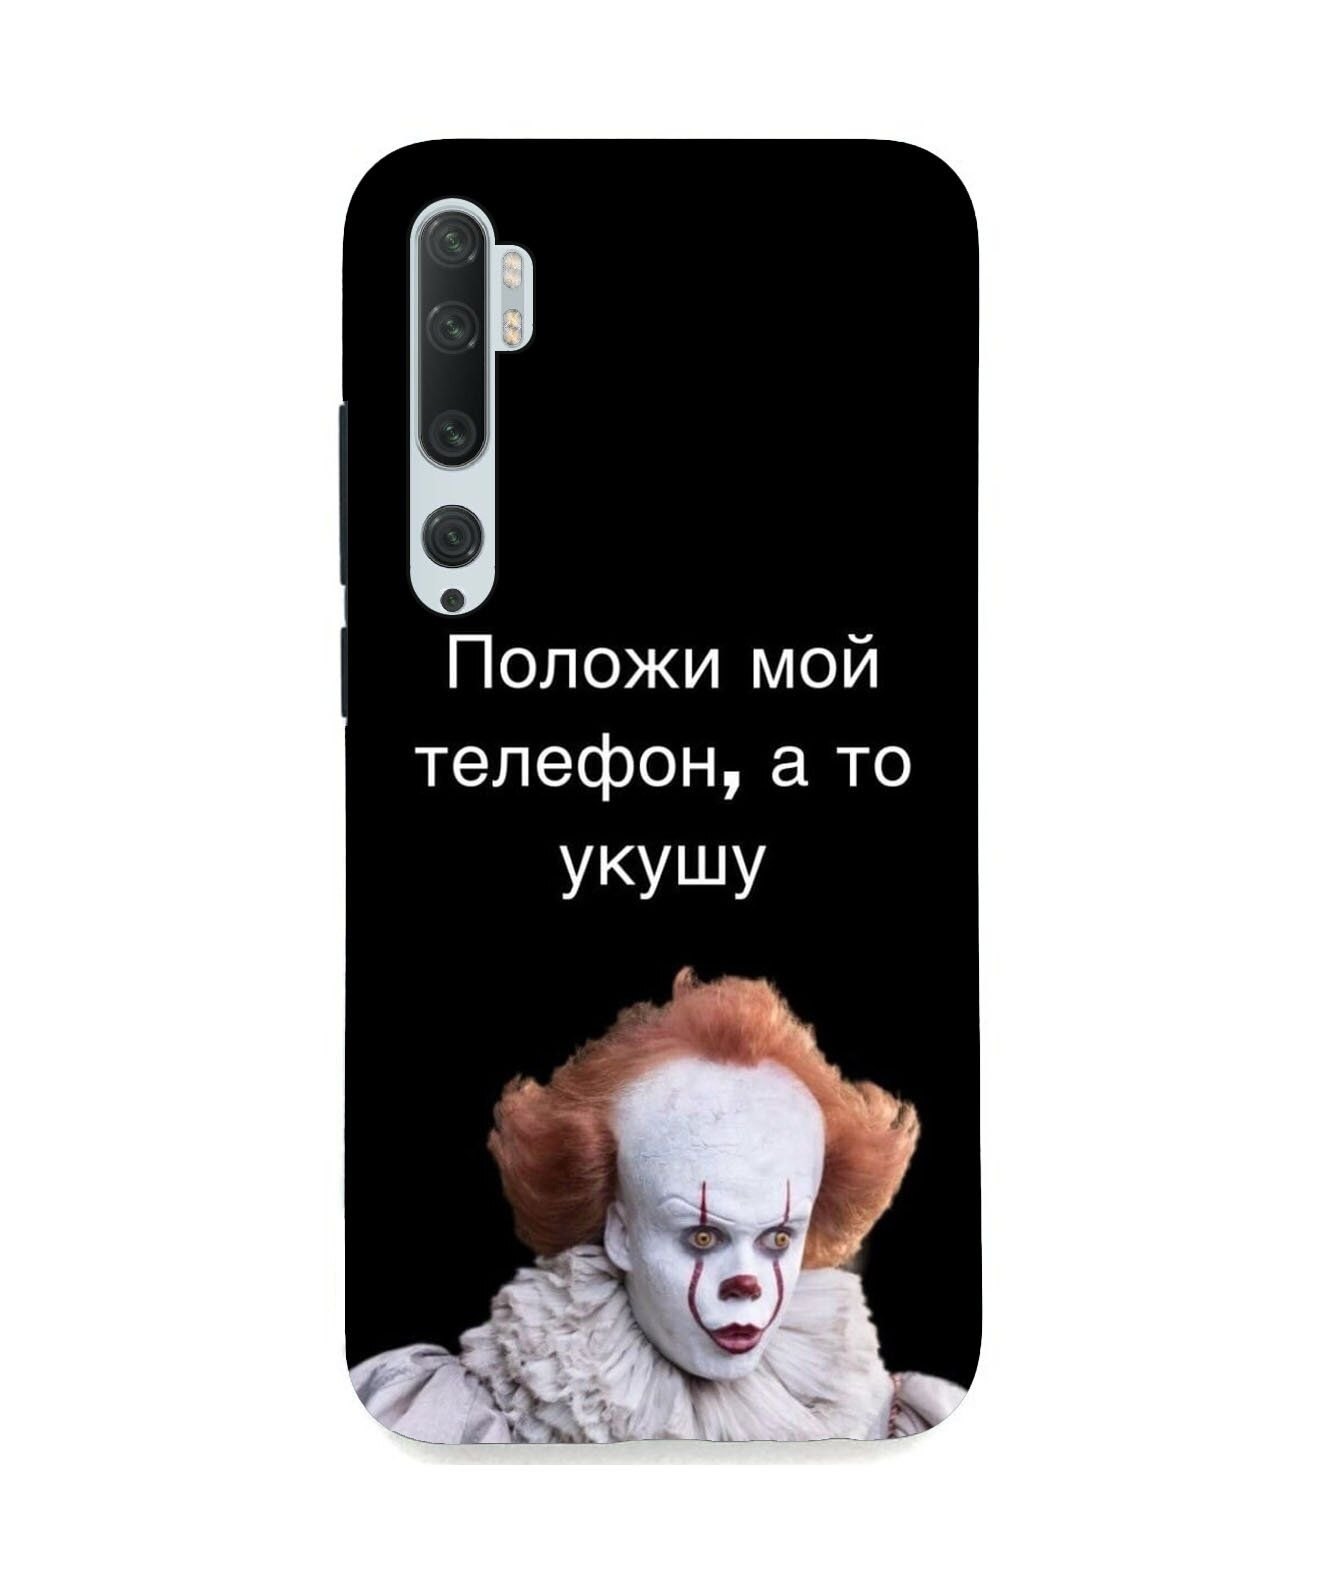 Обои на телефон не трогай мой телефон на русском красивые